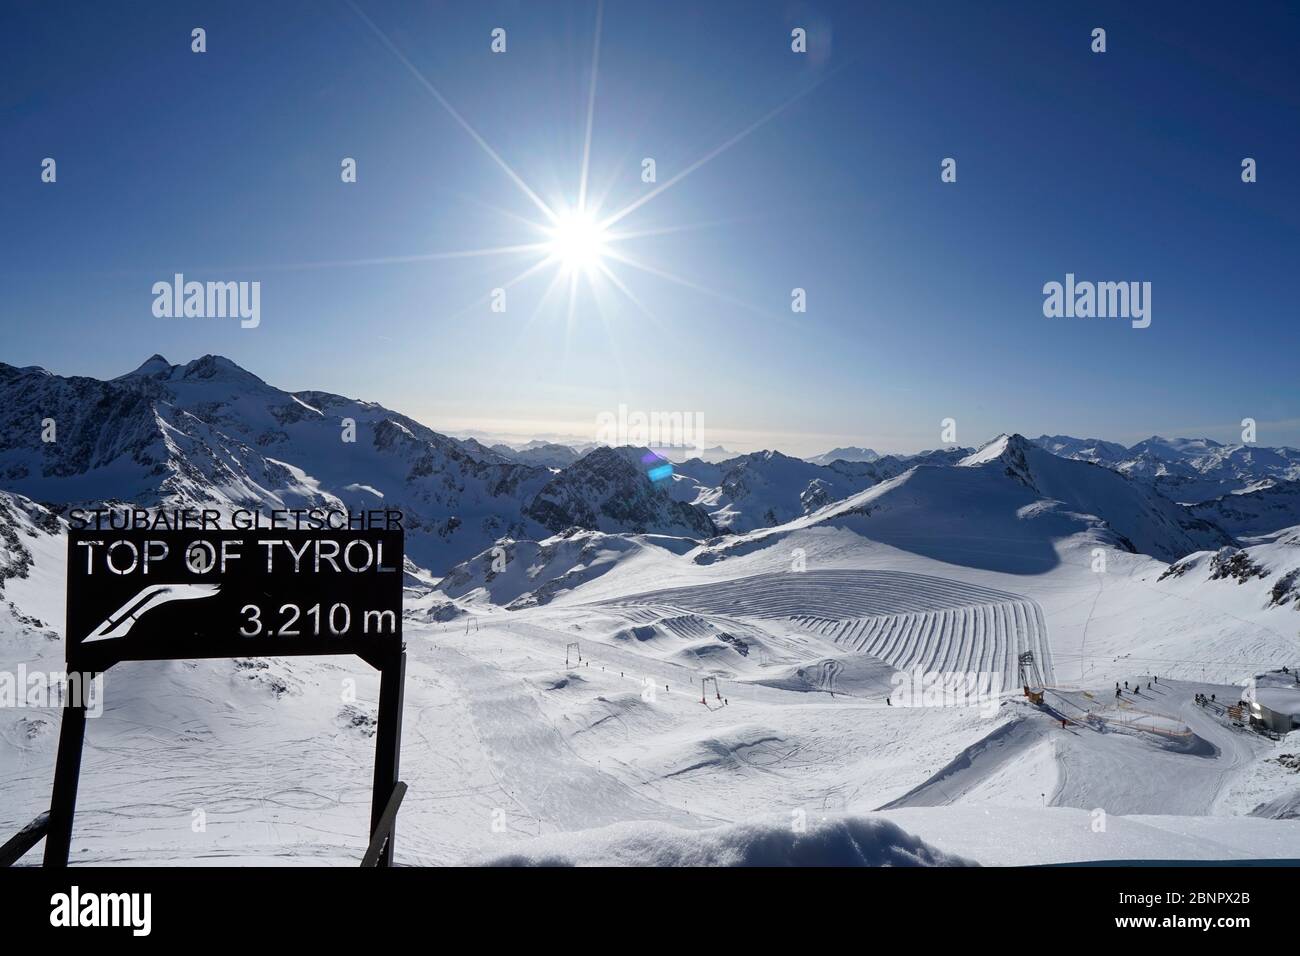 Österreich, Tirol, Stubaital, Stubaier Gletscher, Aussichtsplattform Top of Tyrol, 3210m, Schild, Skipiste Gaisskarferner, Sonne, Hinterlicht Stockfoto